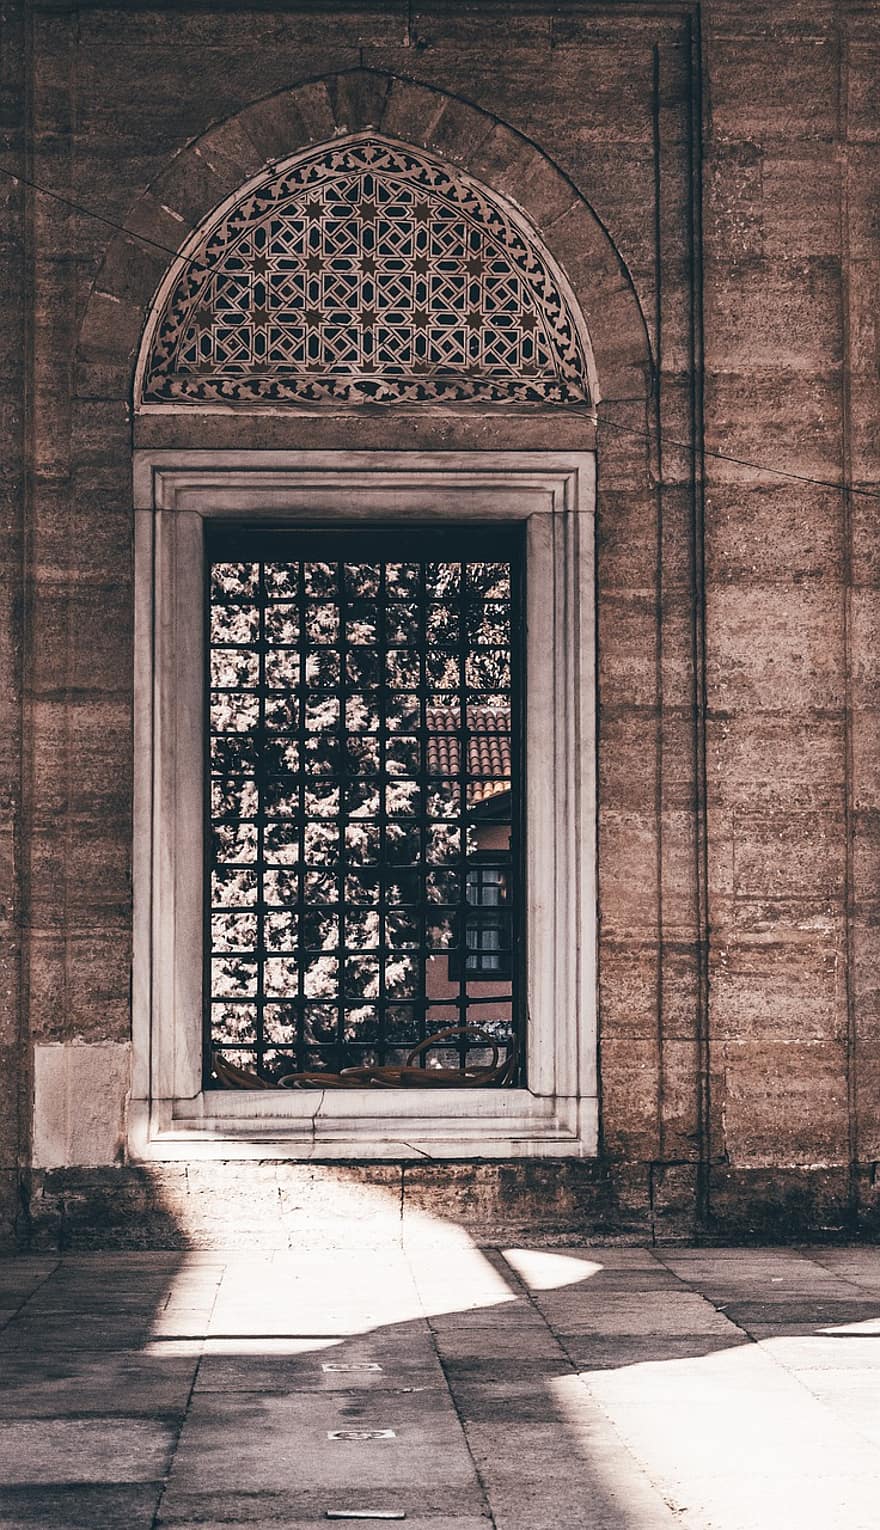 Fenster, Moschee, die Architektur, Islam, Truthahn, Religion, Datum, Reise, Stadt, historisch